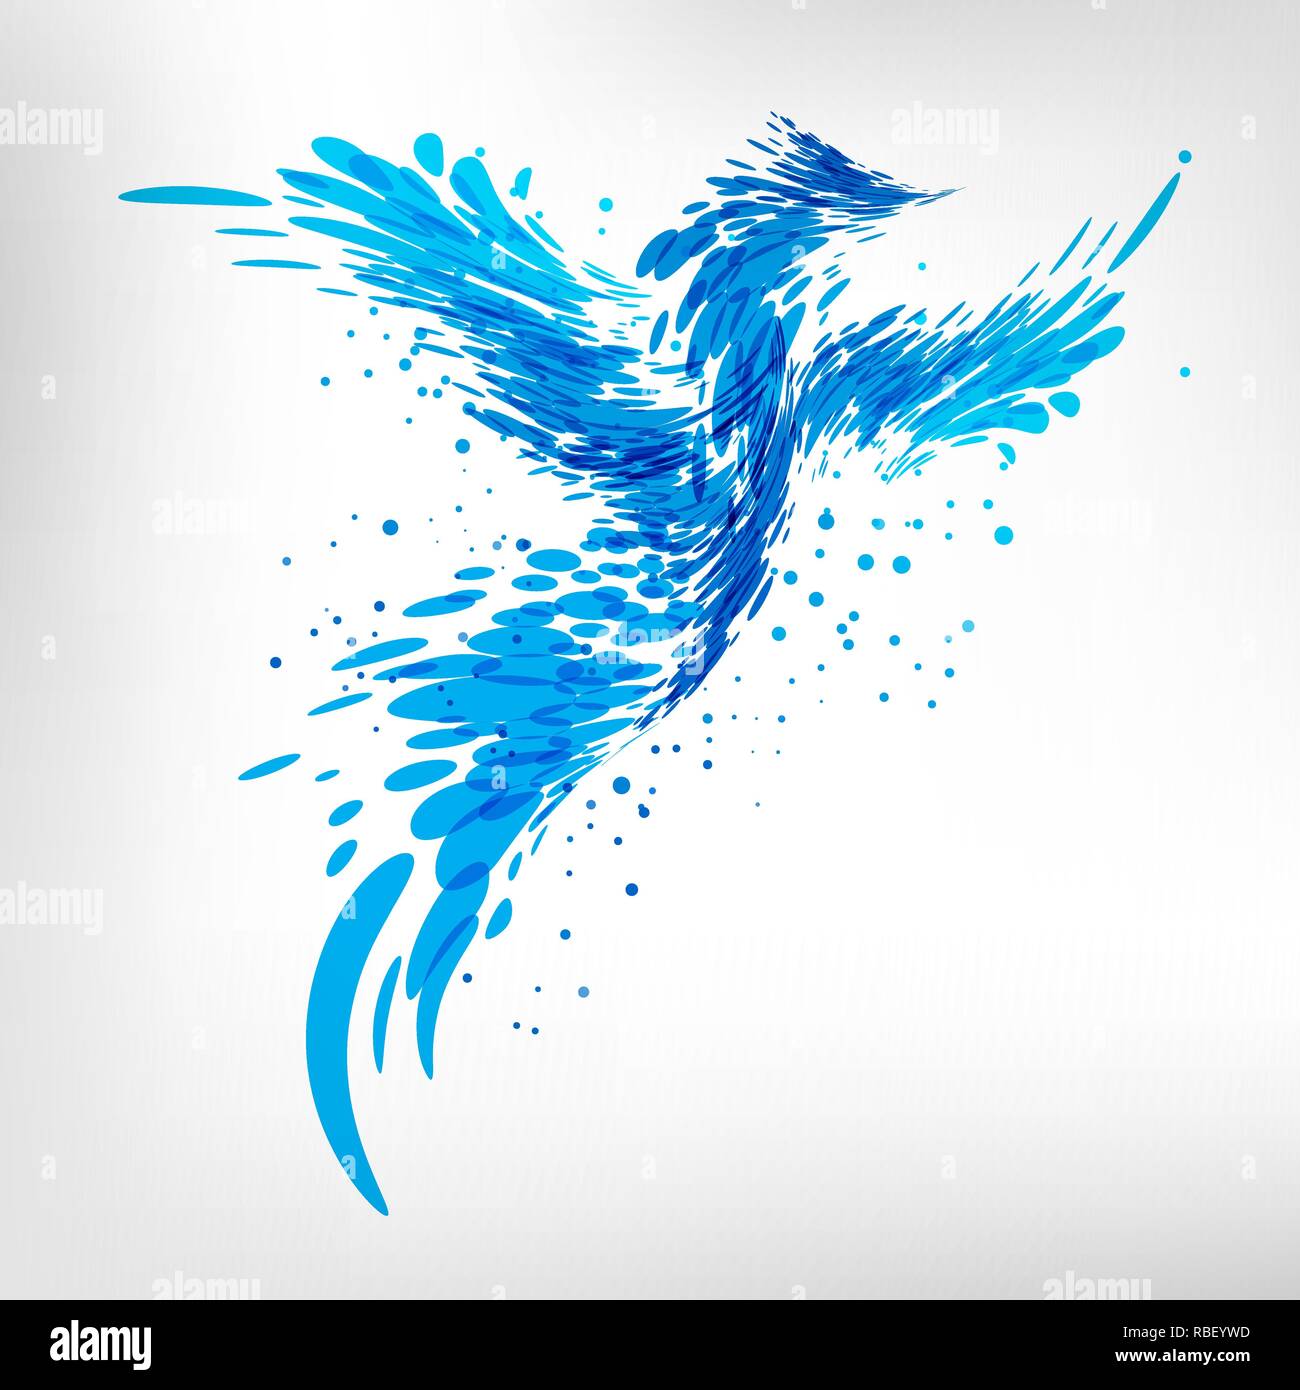 Résumé des projections de l'oiseau bleu sur fond blanc Illustration de Vecteur